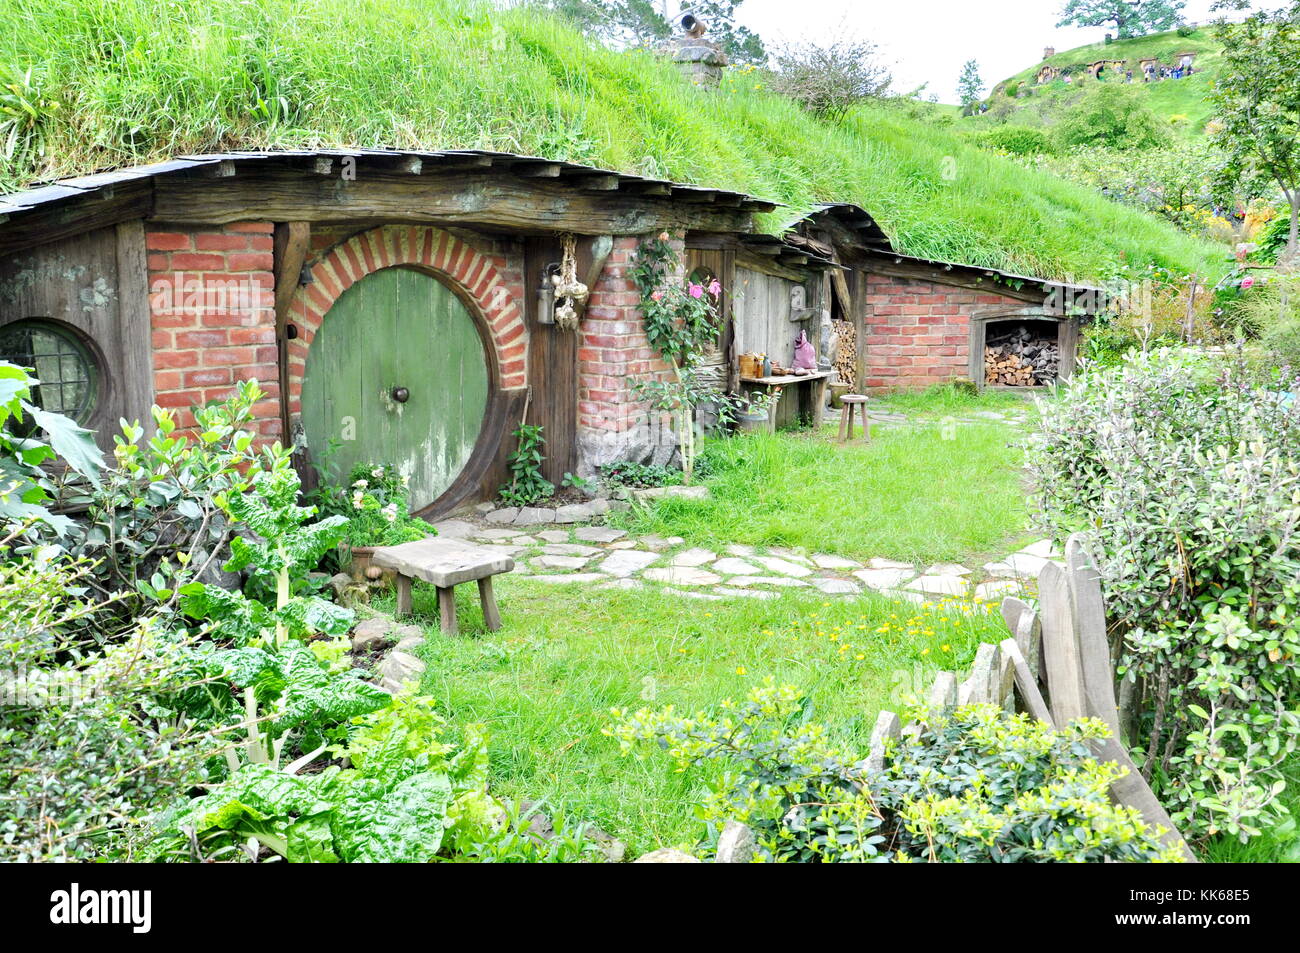 Matamata - NUOVA ZELANDA - novembre 2016 : hobbit home con porta verde una hobbiton filmato creato per catturare il signore degli anelli e hobbit film. Foto Stock